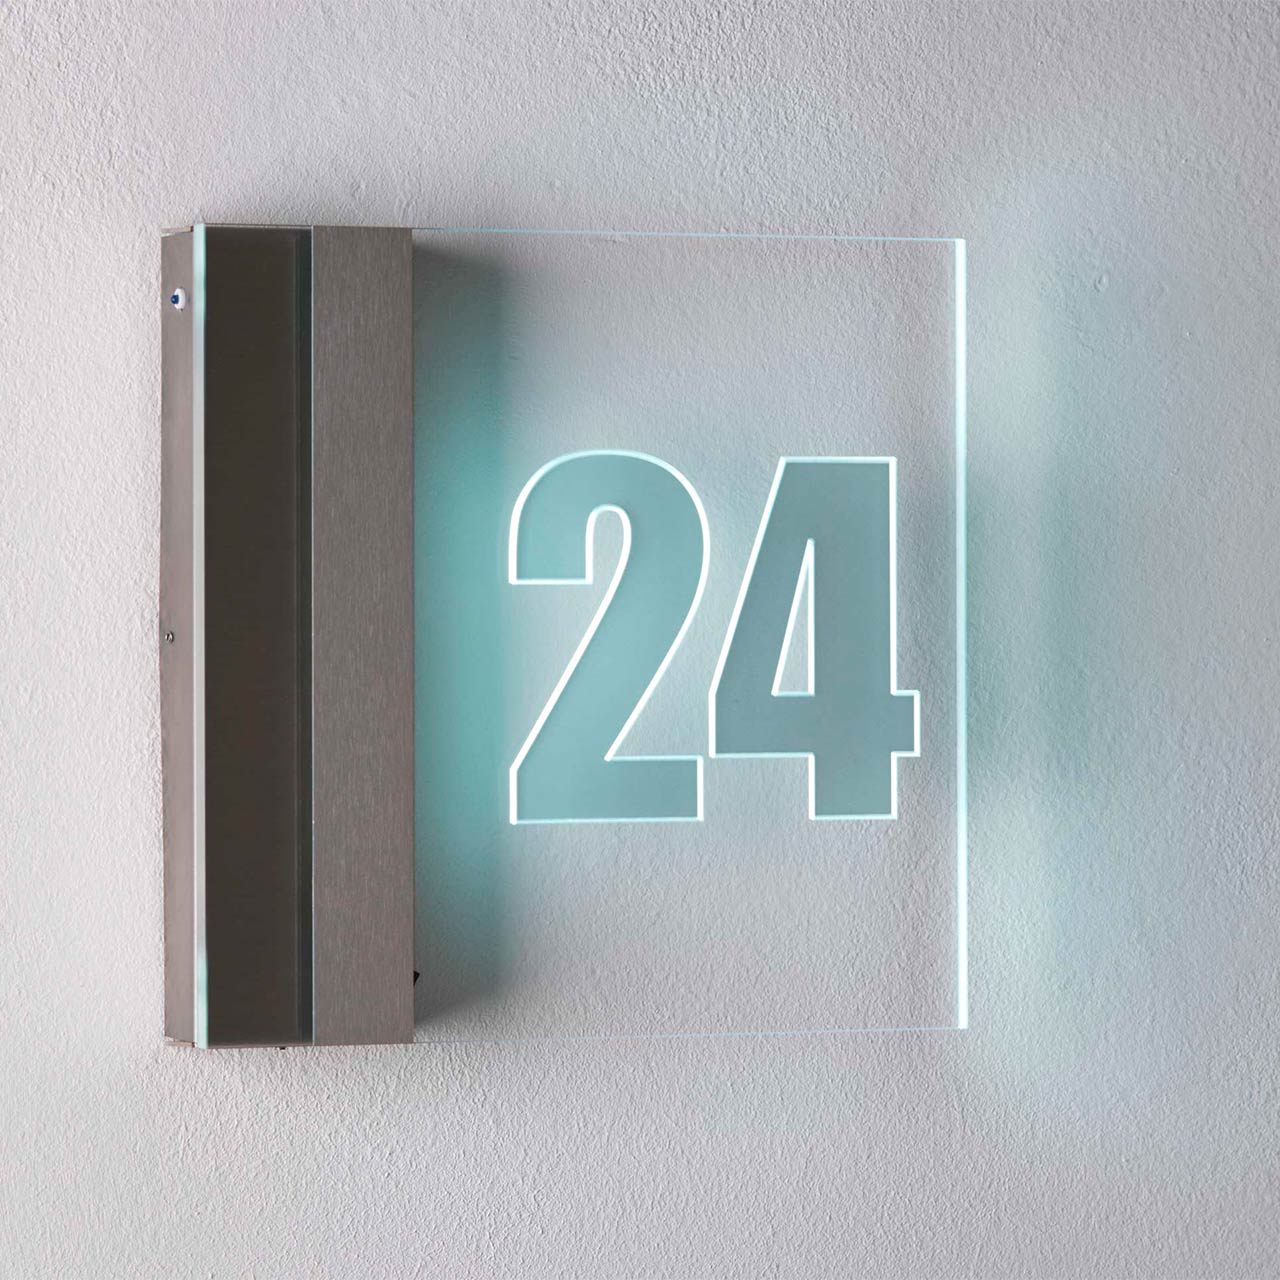 Eine moderne Hausnummernleuchte von Albert Leuchten